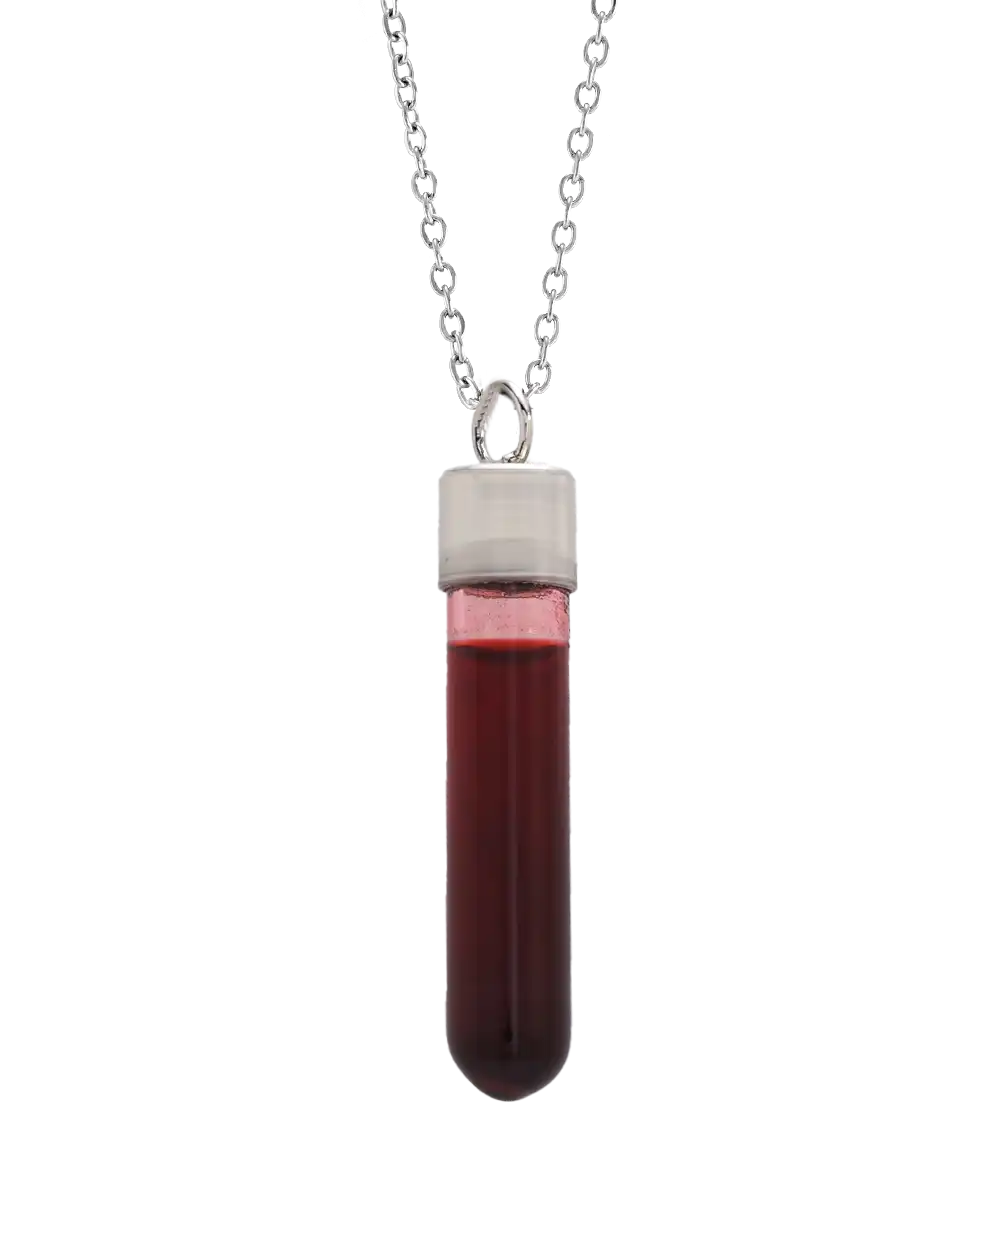 خرید گردنبند مردانه شیشه خون مدل 1718 با بهترین قیمت به همراه جعبه و ارسال رایگان به سراسر ایران درب منزل | گردنبند خون